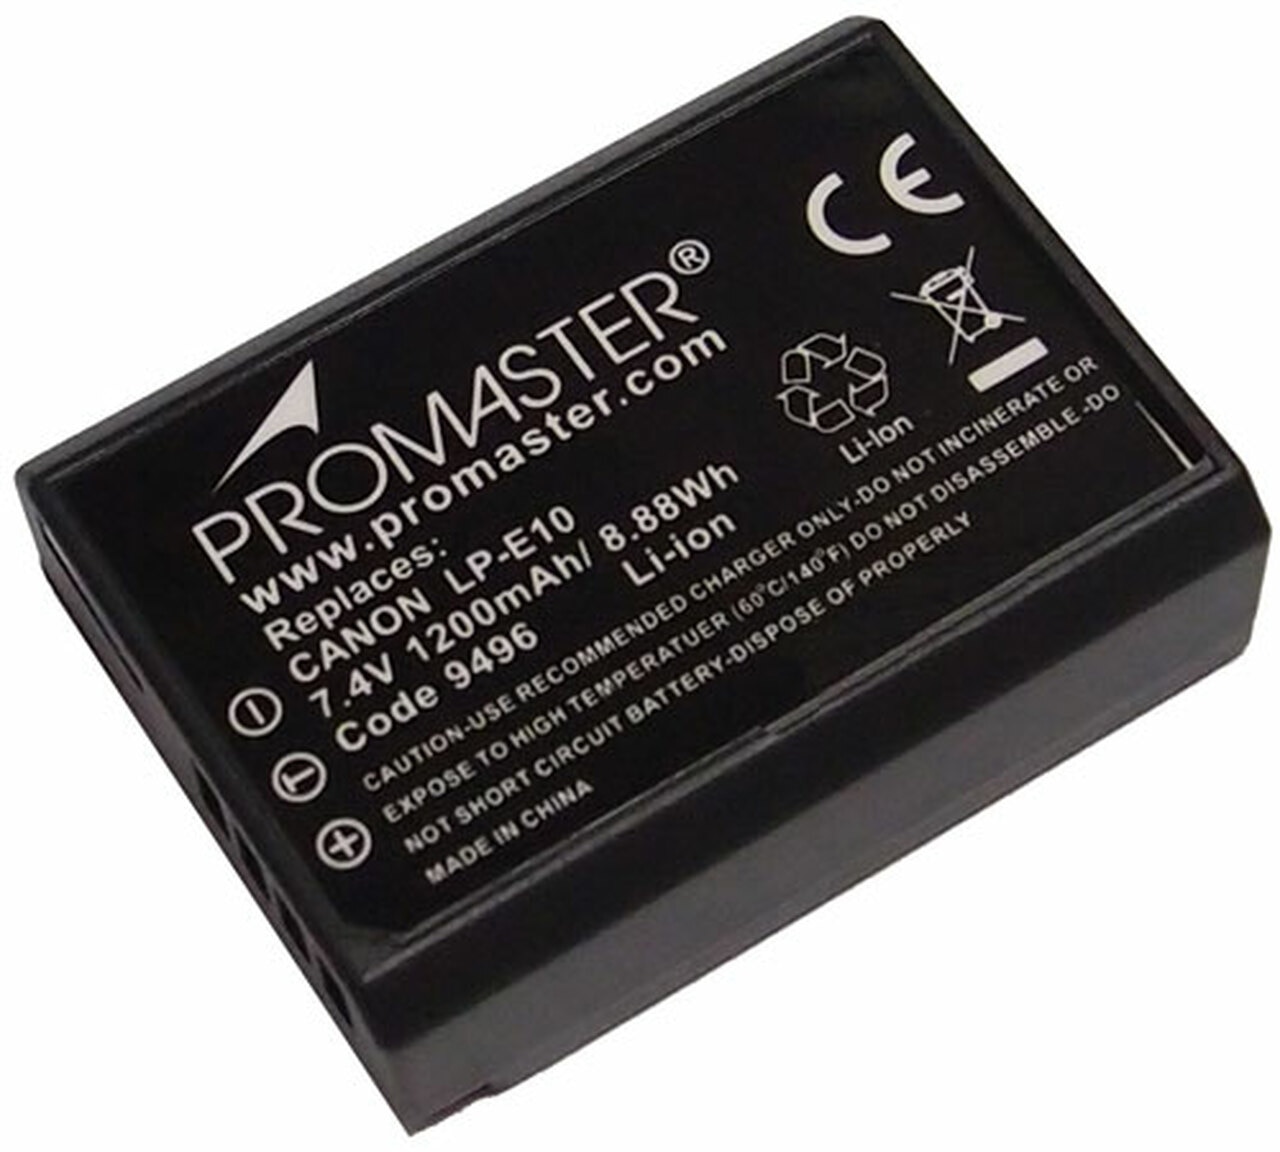 Promaster 9496 LP-E10 Battery for Canon